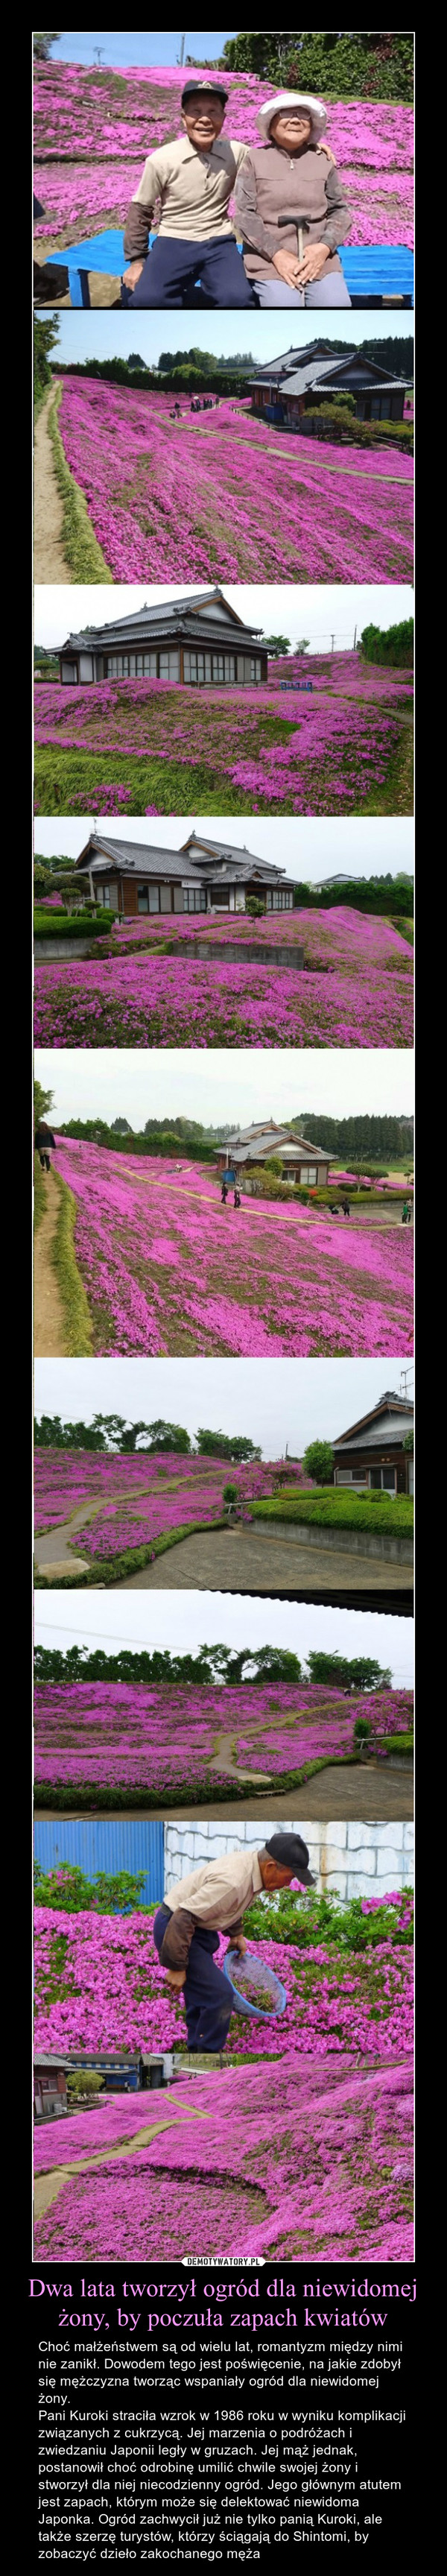 Dwa lata tworzył ogród dla niewidomej żony, by poczuła zapach kwiatów